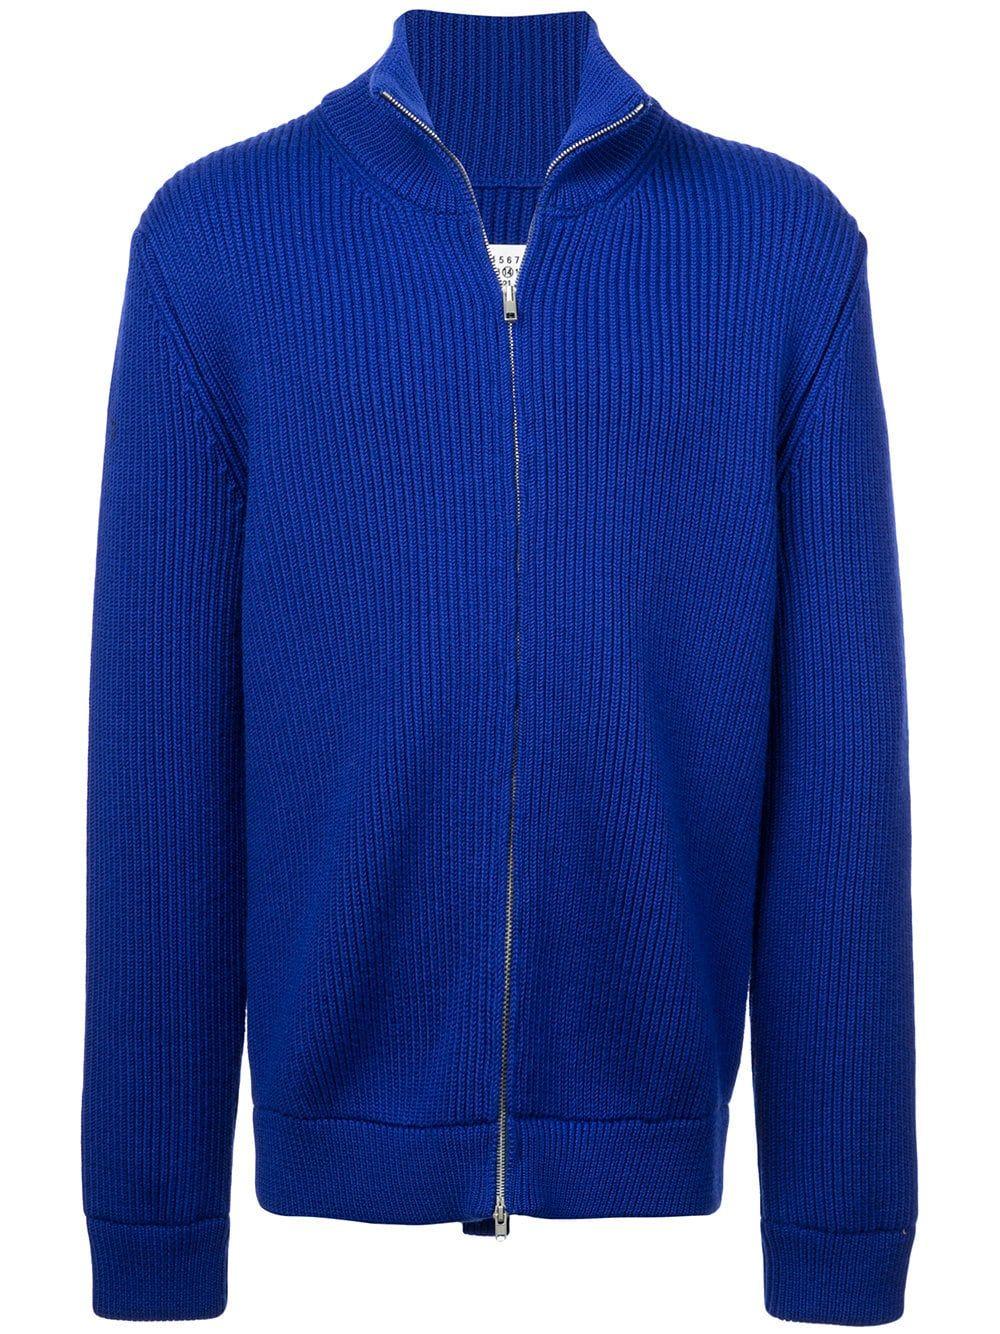 Maison Margiela Blue Wool Cardigan in Blue for Men - Lyst